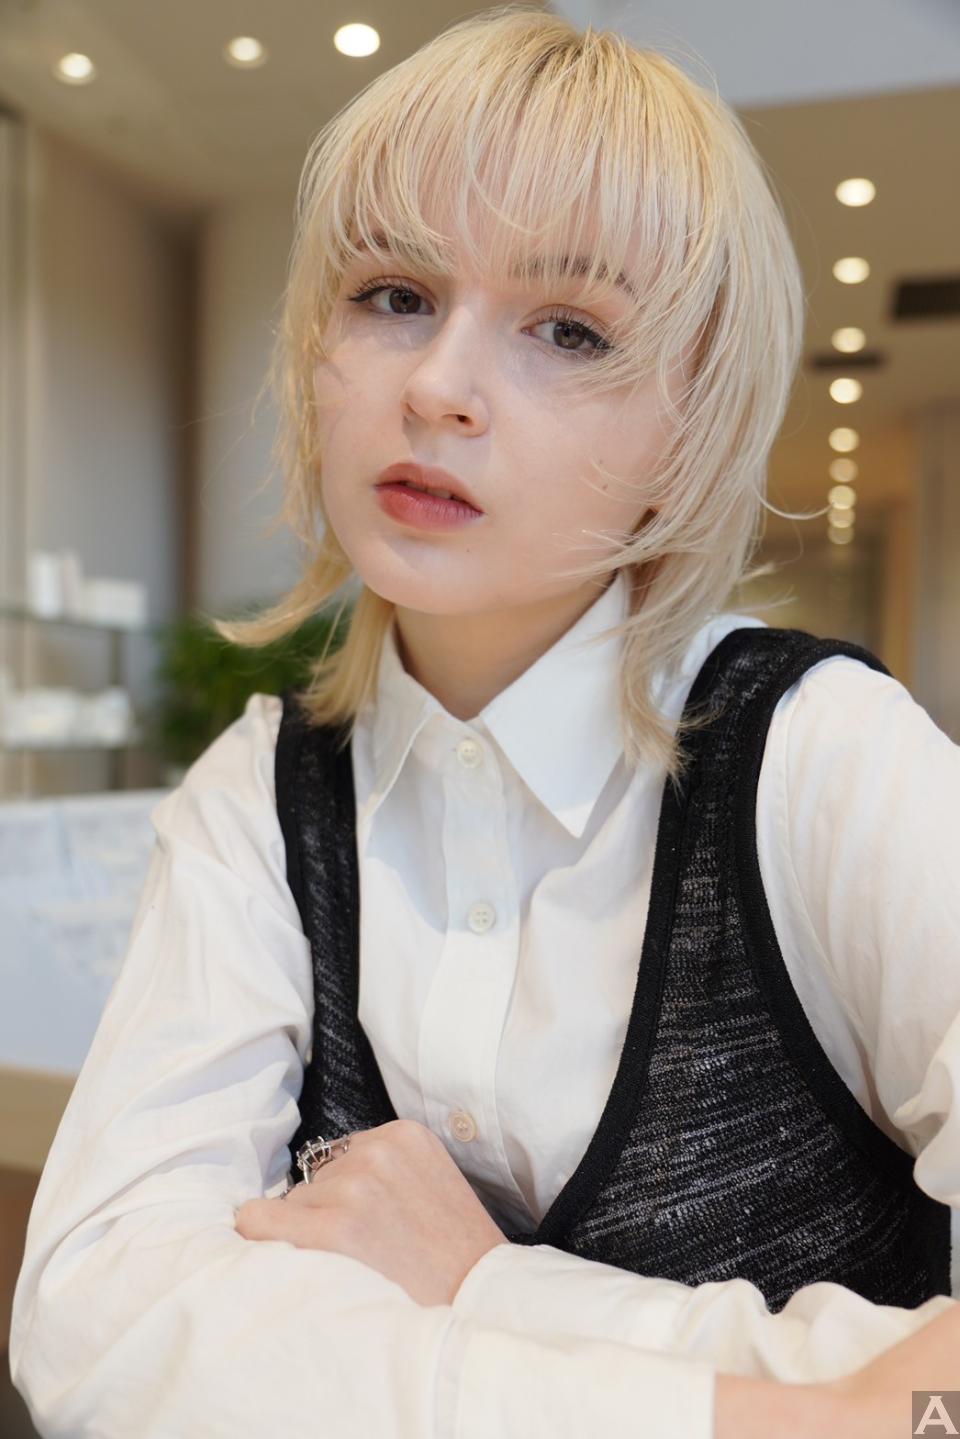 東京外国人モデル事務所アクアモデル所属の白人モデルのコラ